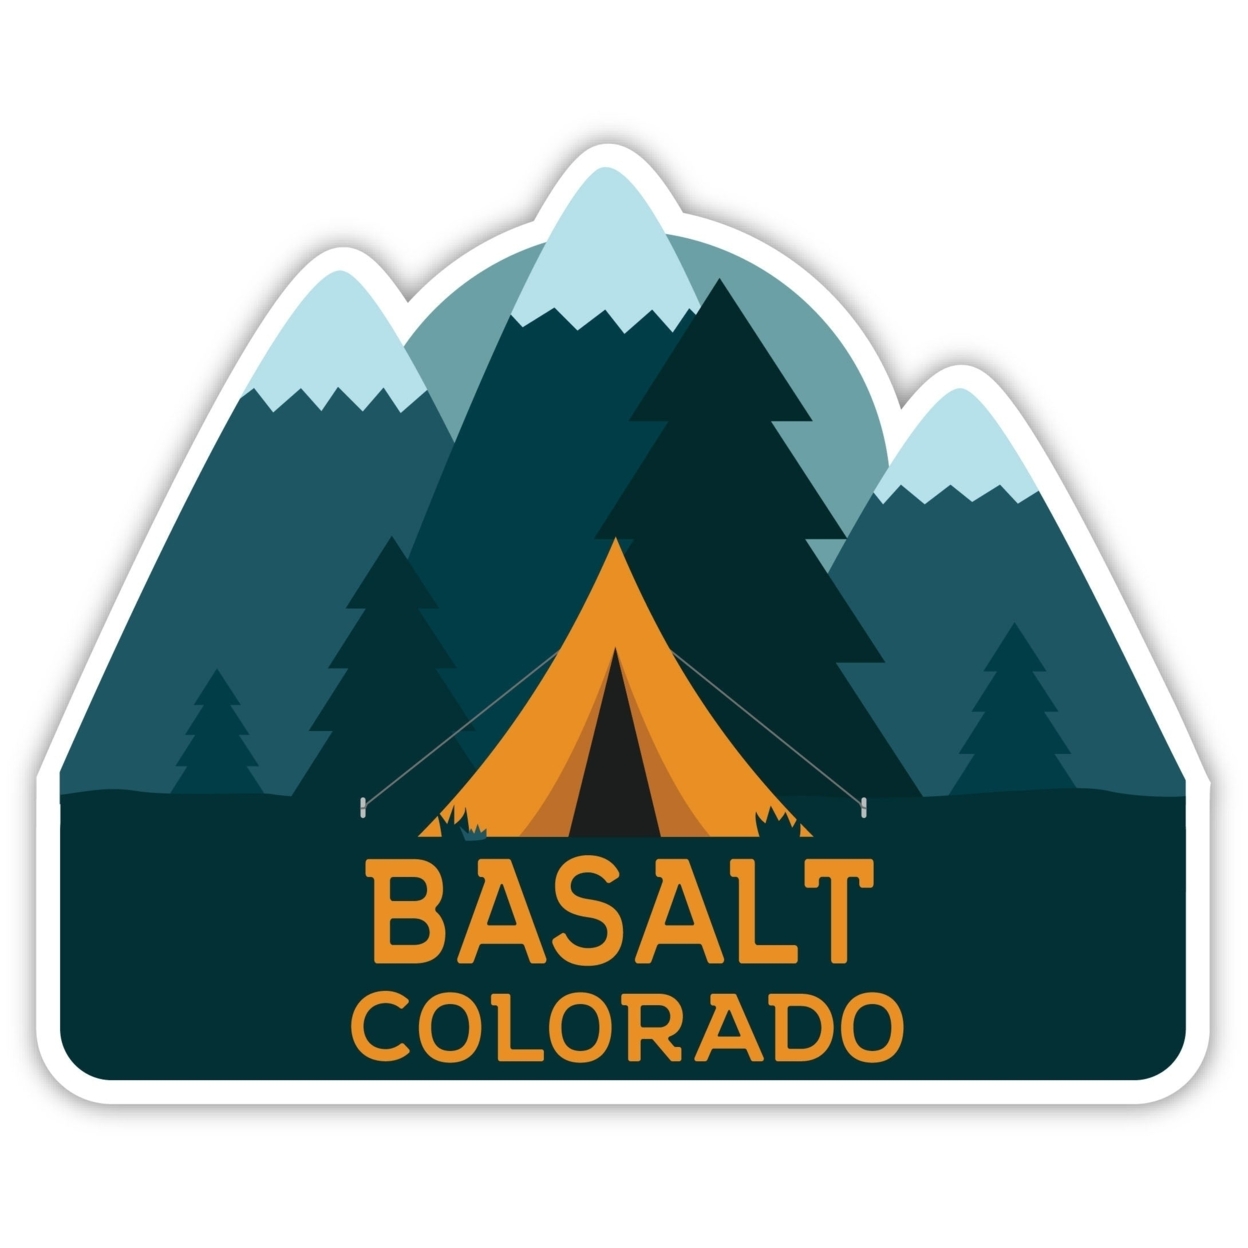 Basalt Colorado Souvenir Decorative Stickers (Choose Theme And Size) - Single Unit, 8-Inch, Tent